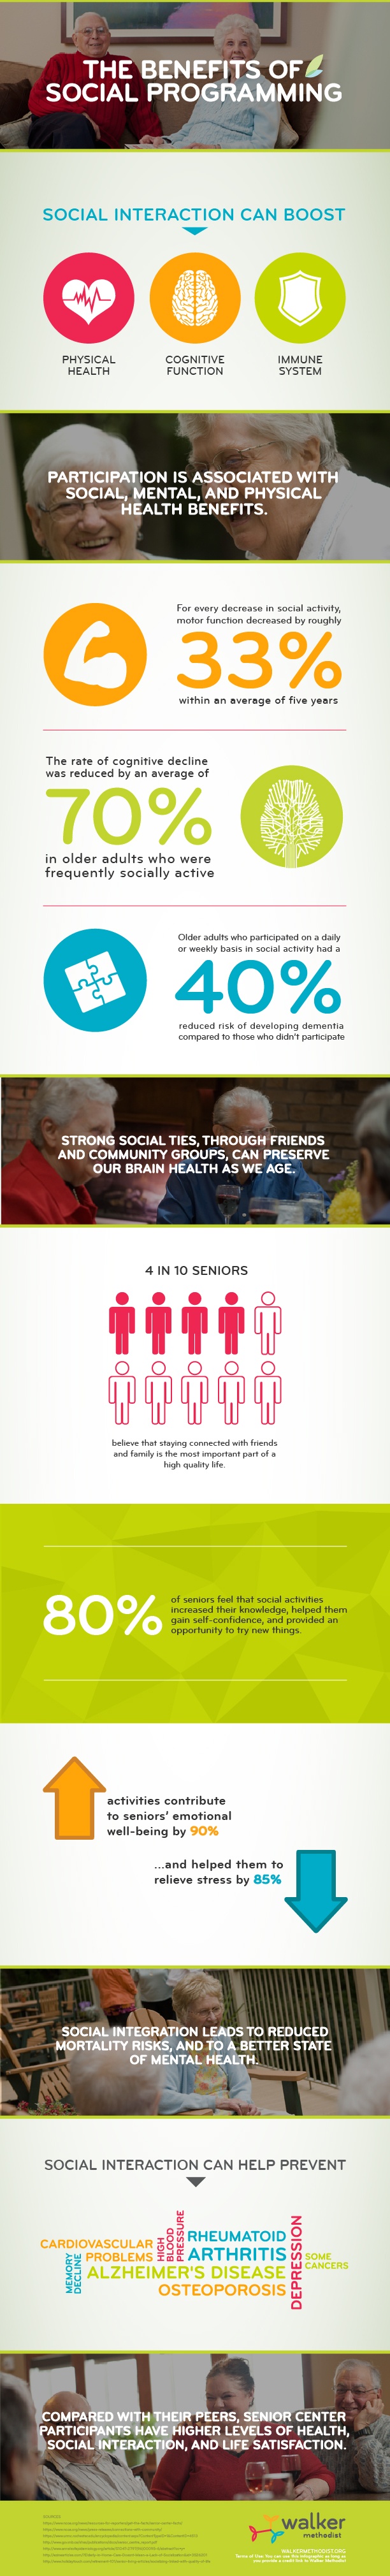 Benefits of Social Programming for Seniors